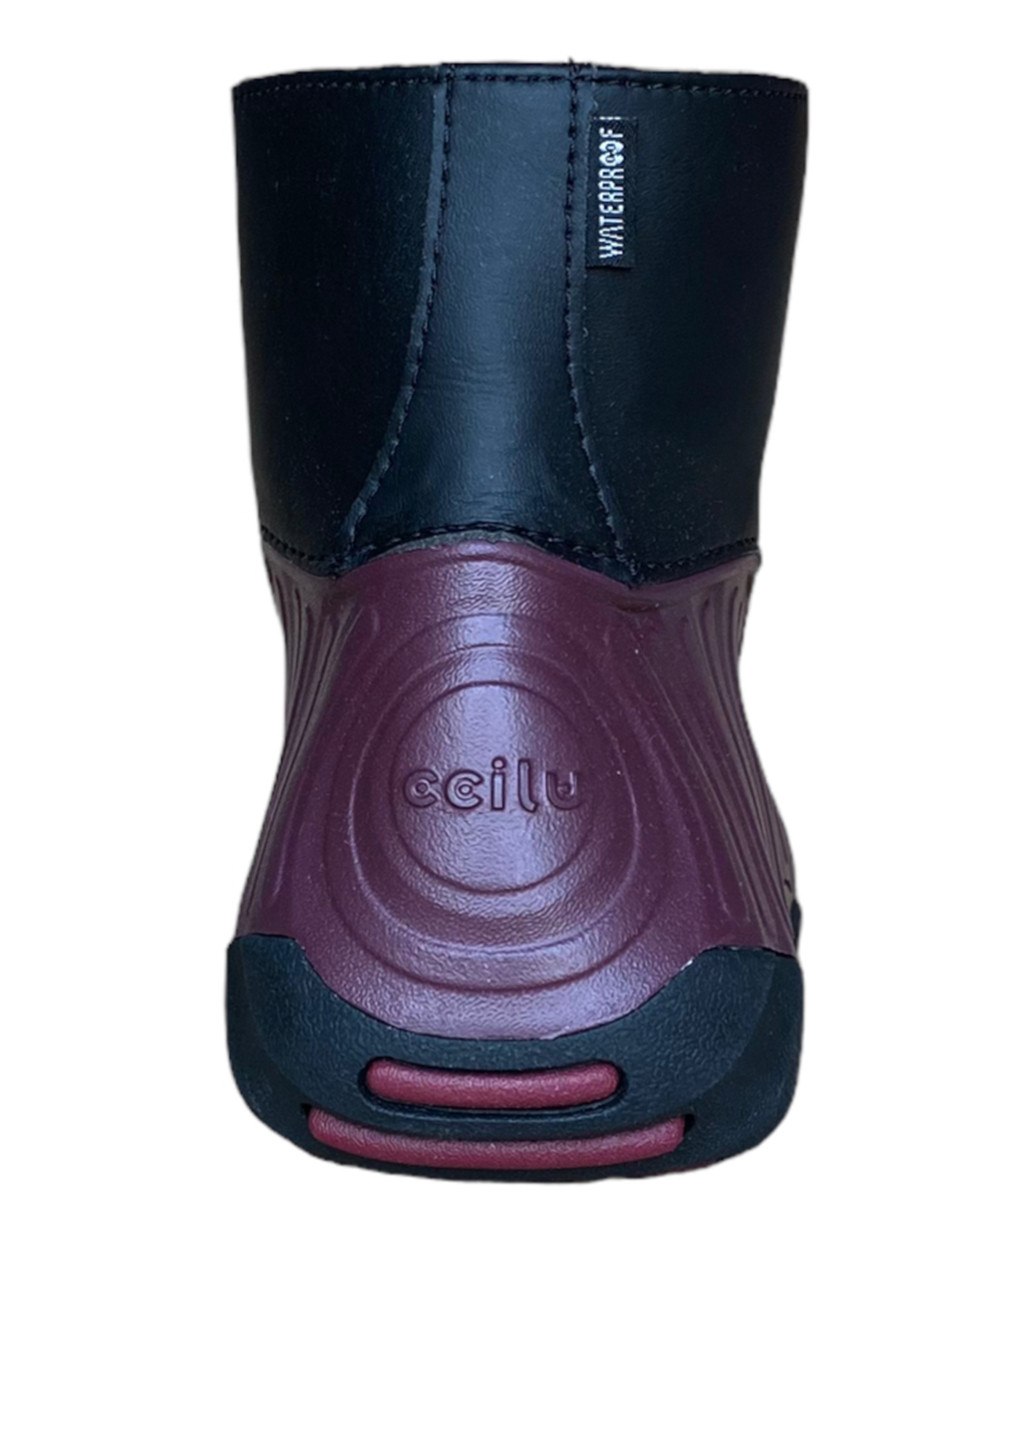 Осенние ботинки CCILU без декора резиновые, из искусственной кожи